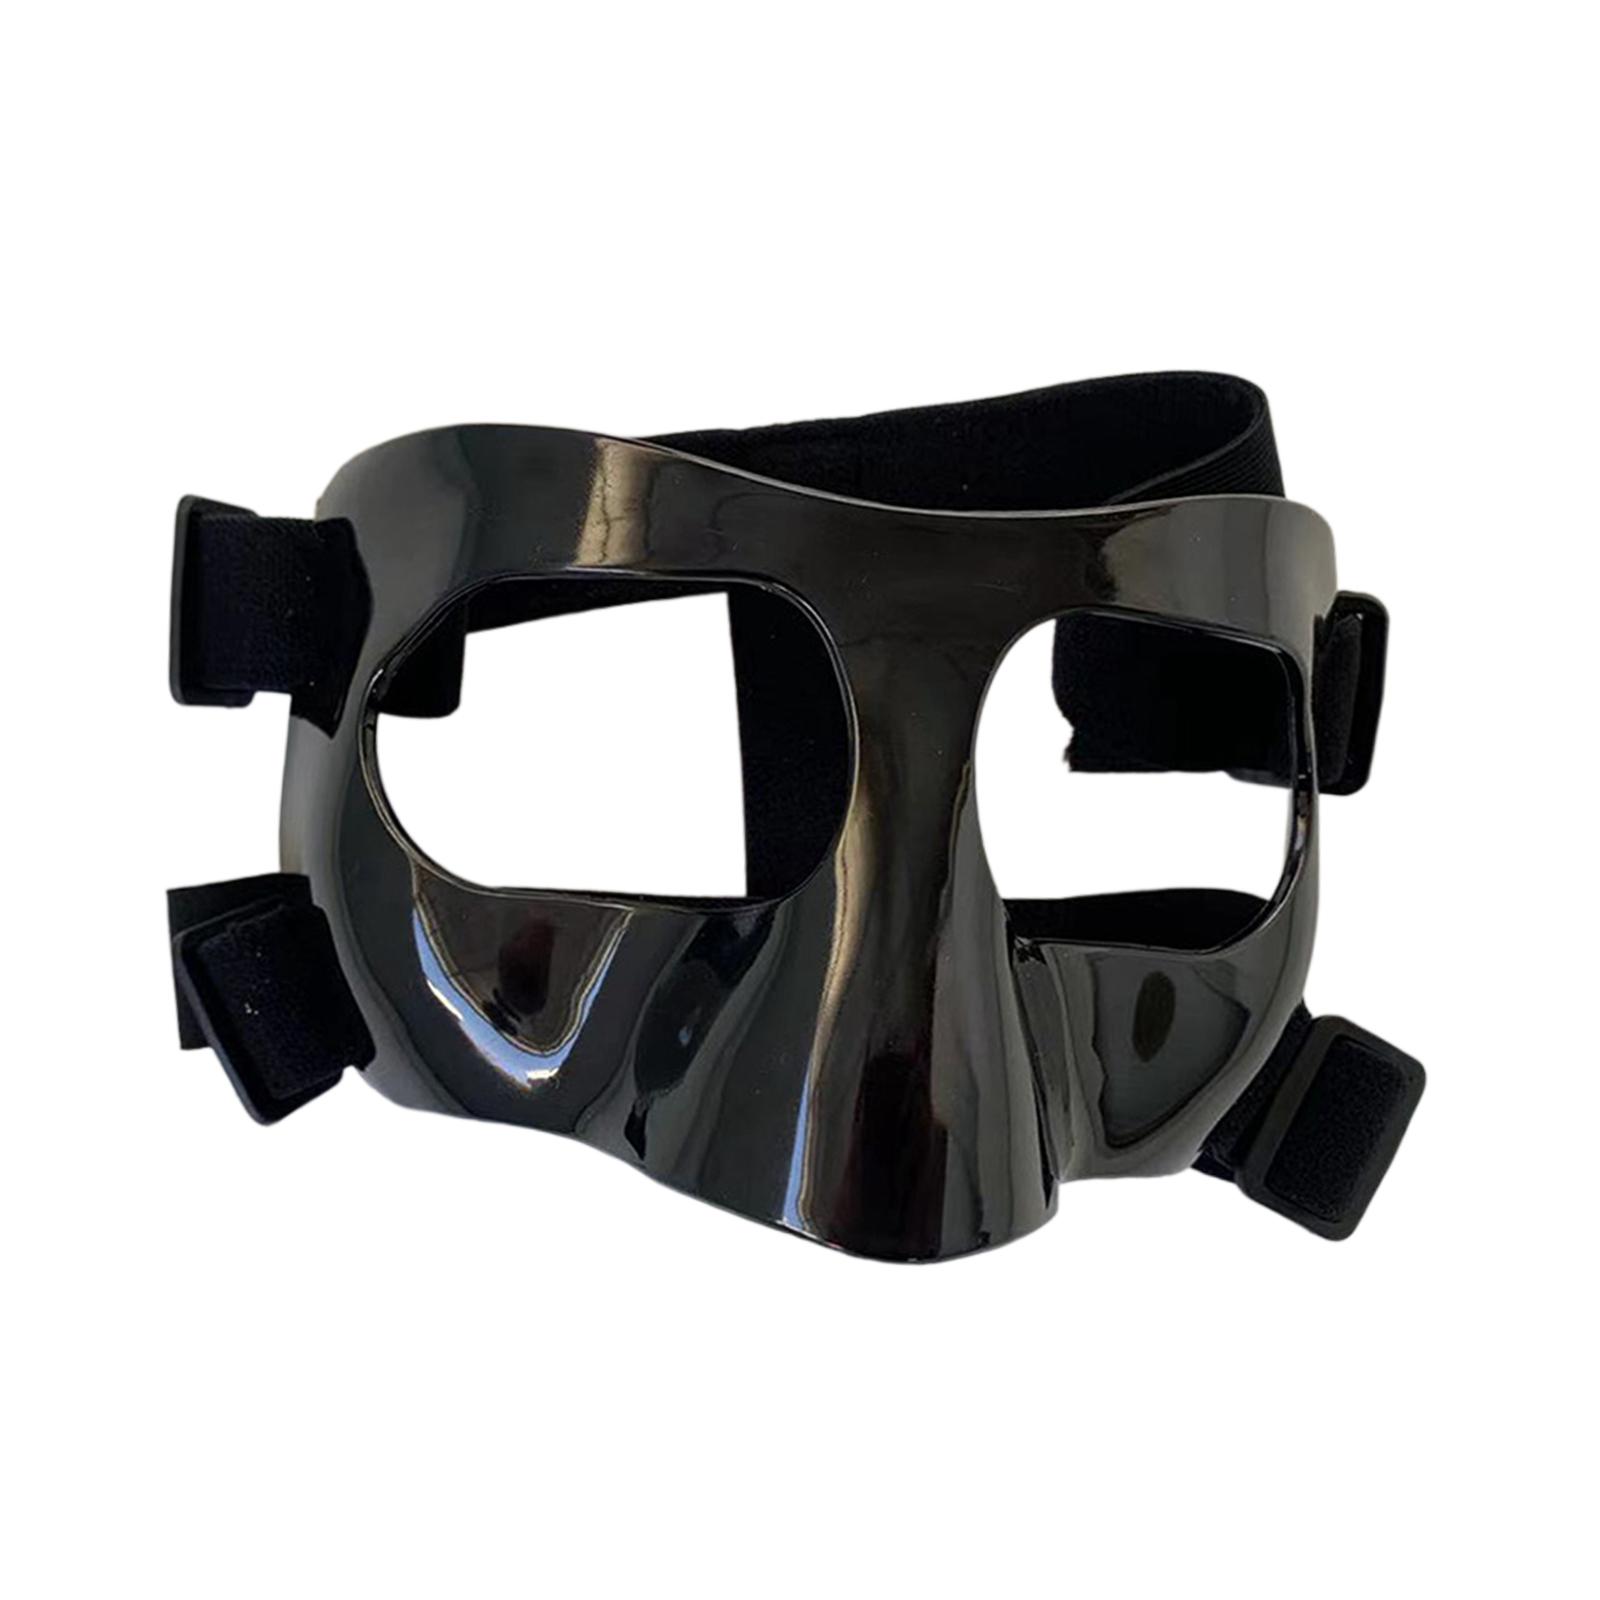 Basketball Face Guard for Broken Nose, Protective Facial Cover